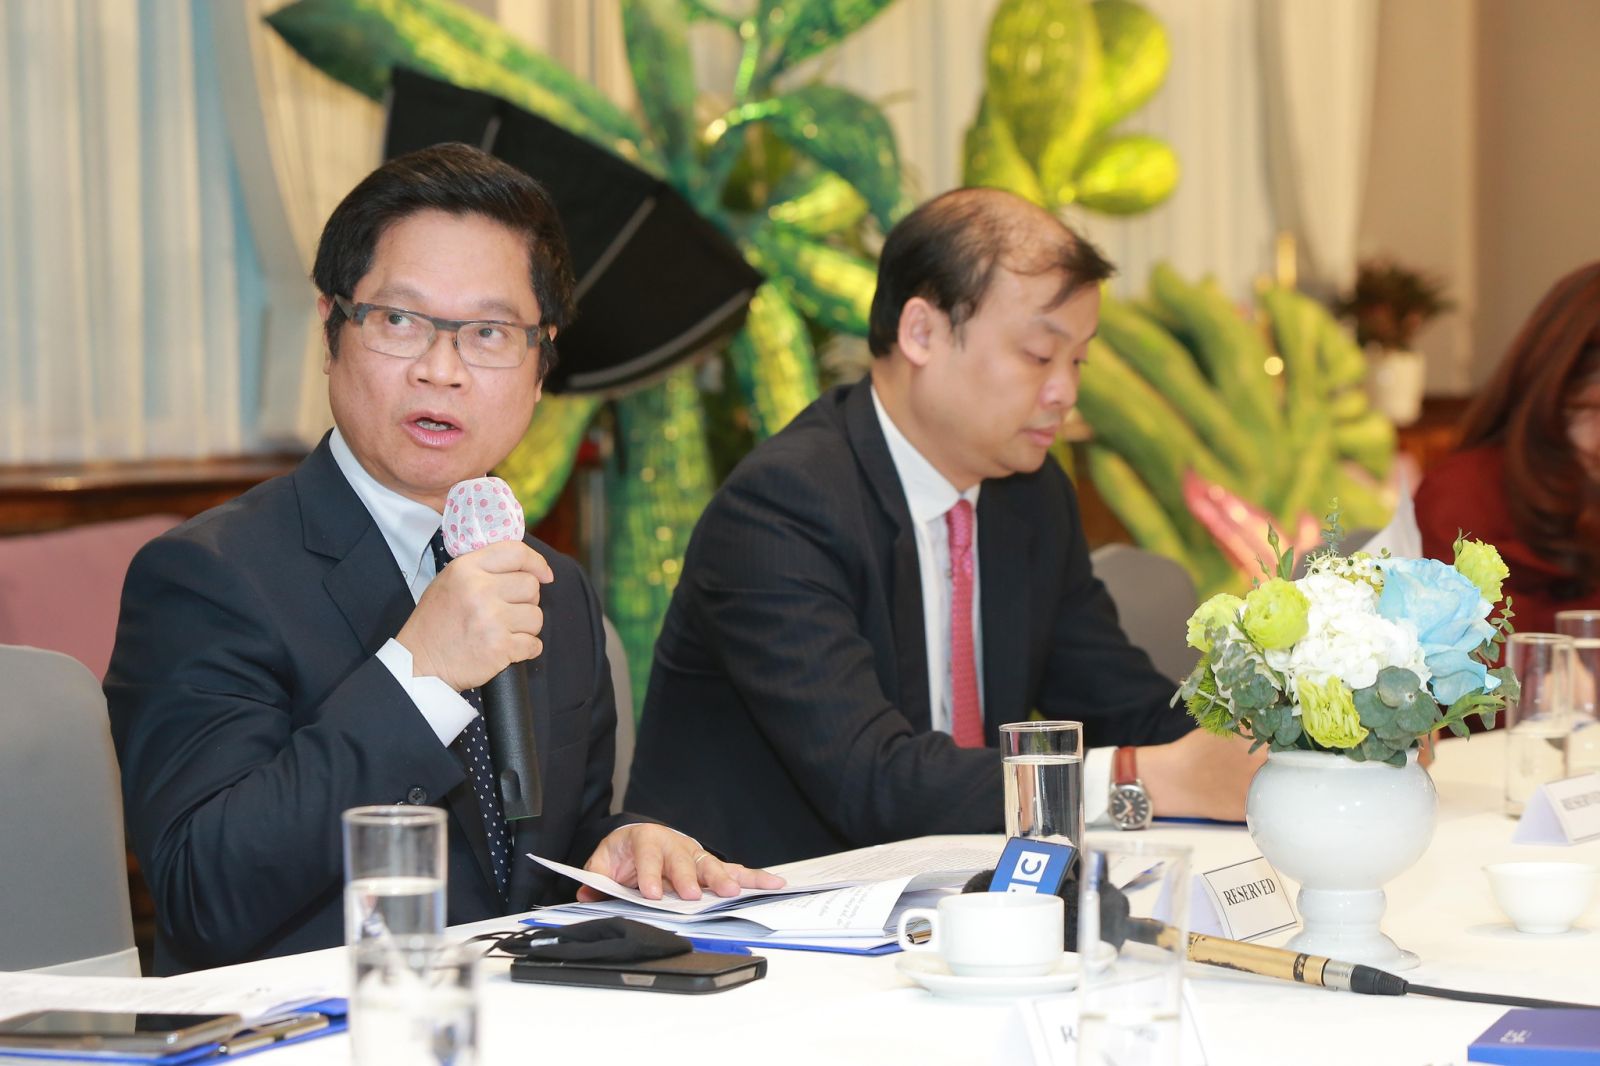 Ông Vũ Tiến Lộc, Đại biểu Quốc hội khóa XV, Ủy viên Ủy ban Kinh tế của Quốc hội, Chủ tịch Trung tâm Trọng tài quốc tế Việt Nam (VIAC) trao đổi tại sự kiện